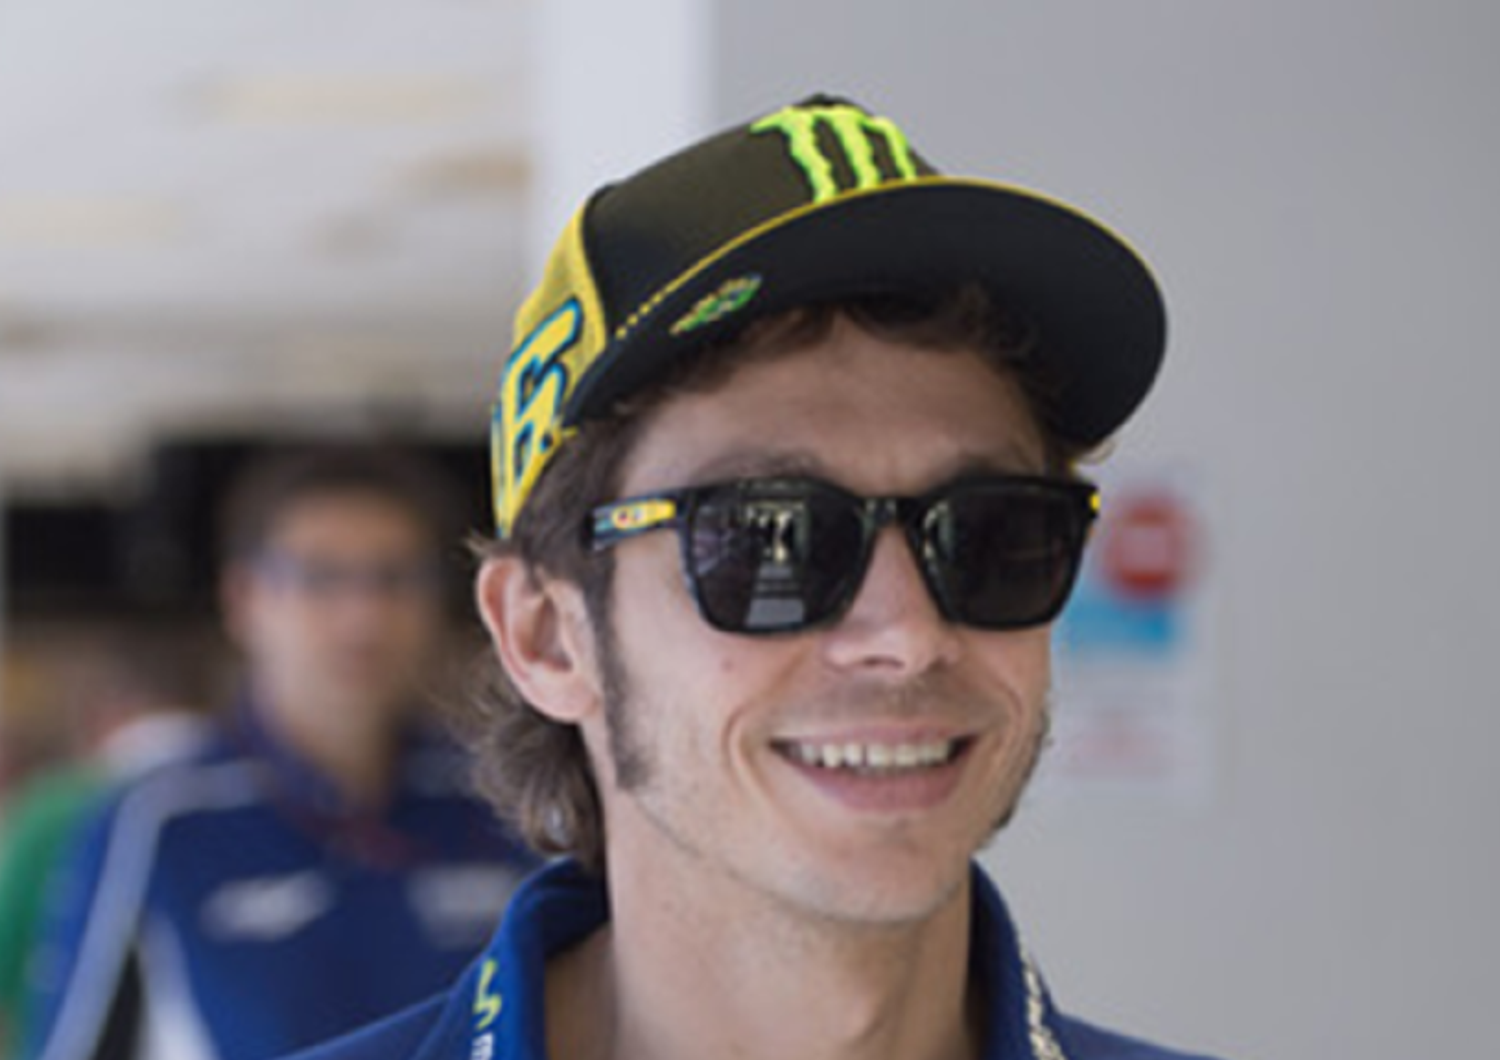 MotoGP: Rossi hopes Lorenzo stays with Yamaha